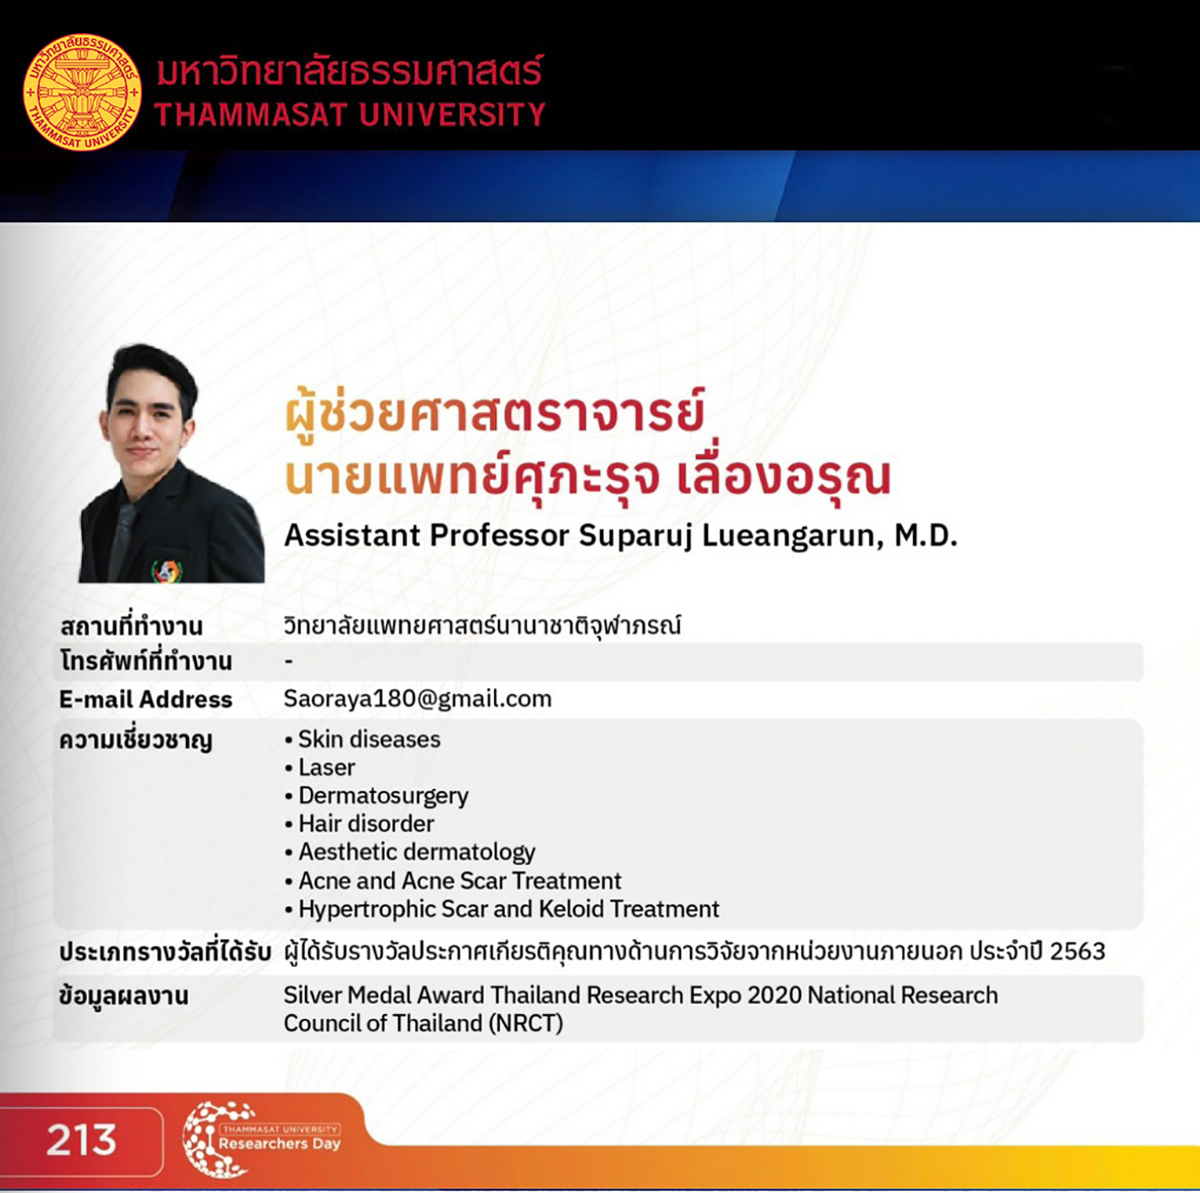 ผู้ช่วยศาสตราจารย์ นายแพทย์ศุภะรุจ เลื่องอรุณ (หมอรุจ) Assistant Professor Suparuj Lueangarun, MD (Dr. Ruj)